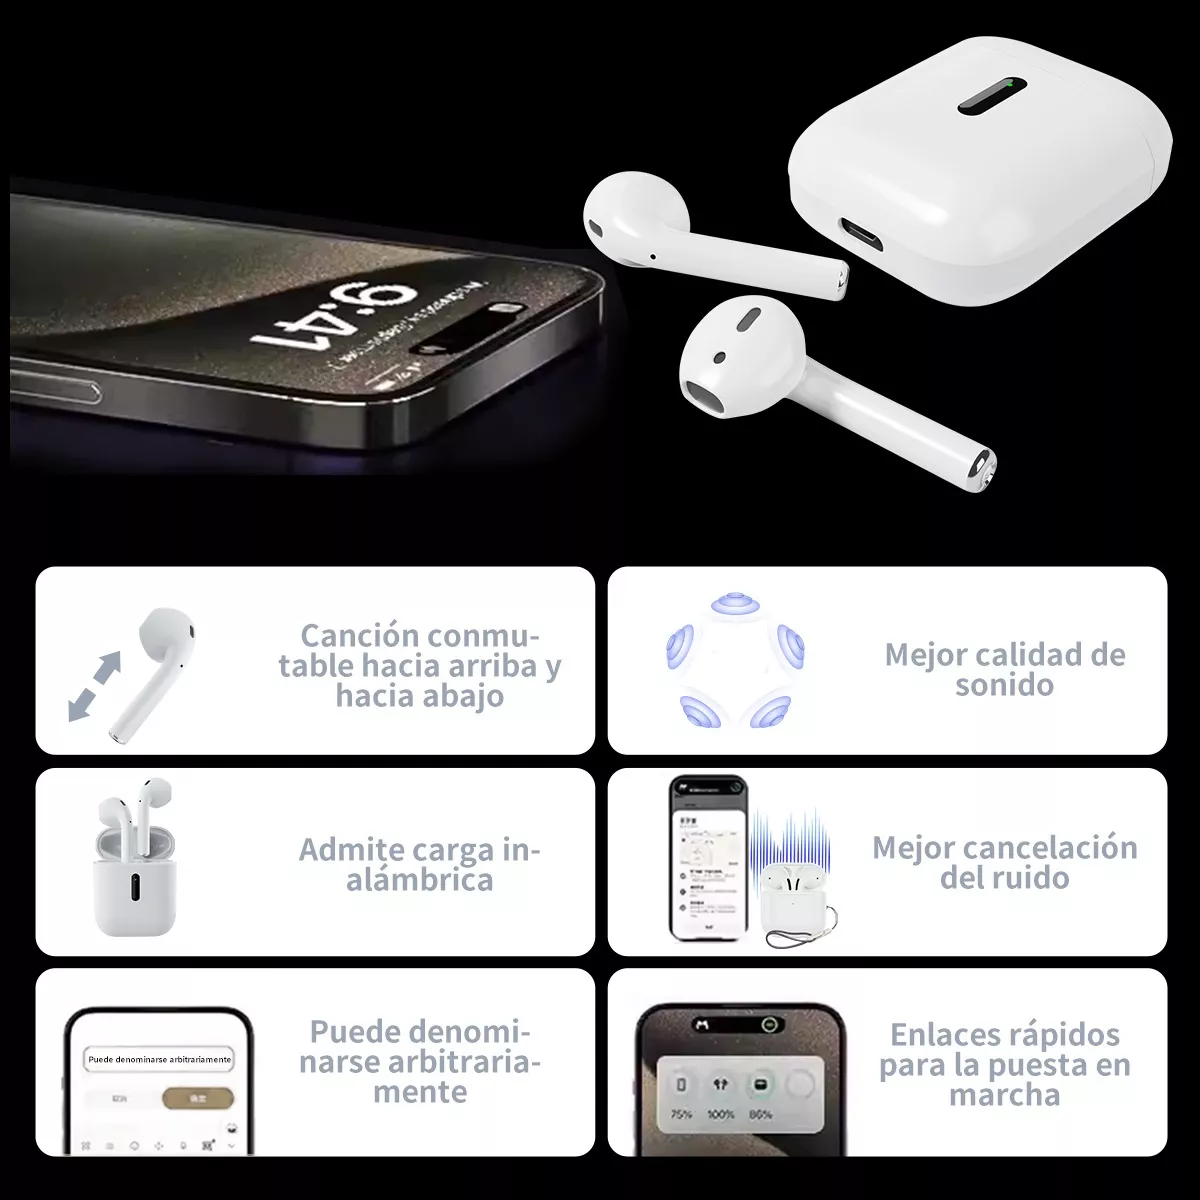 Mejores auriculares inalámbricos compatibles con iPhone